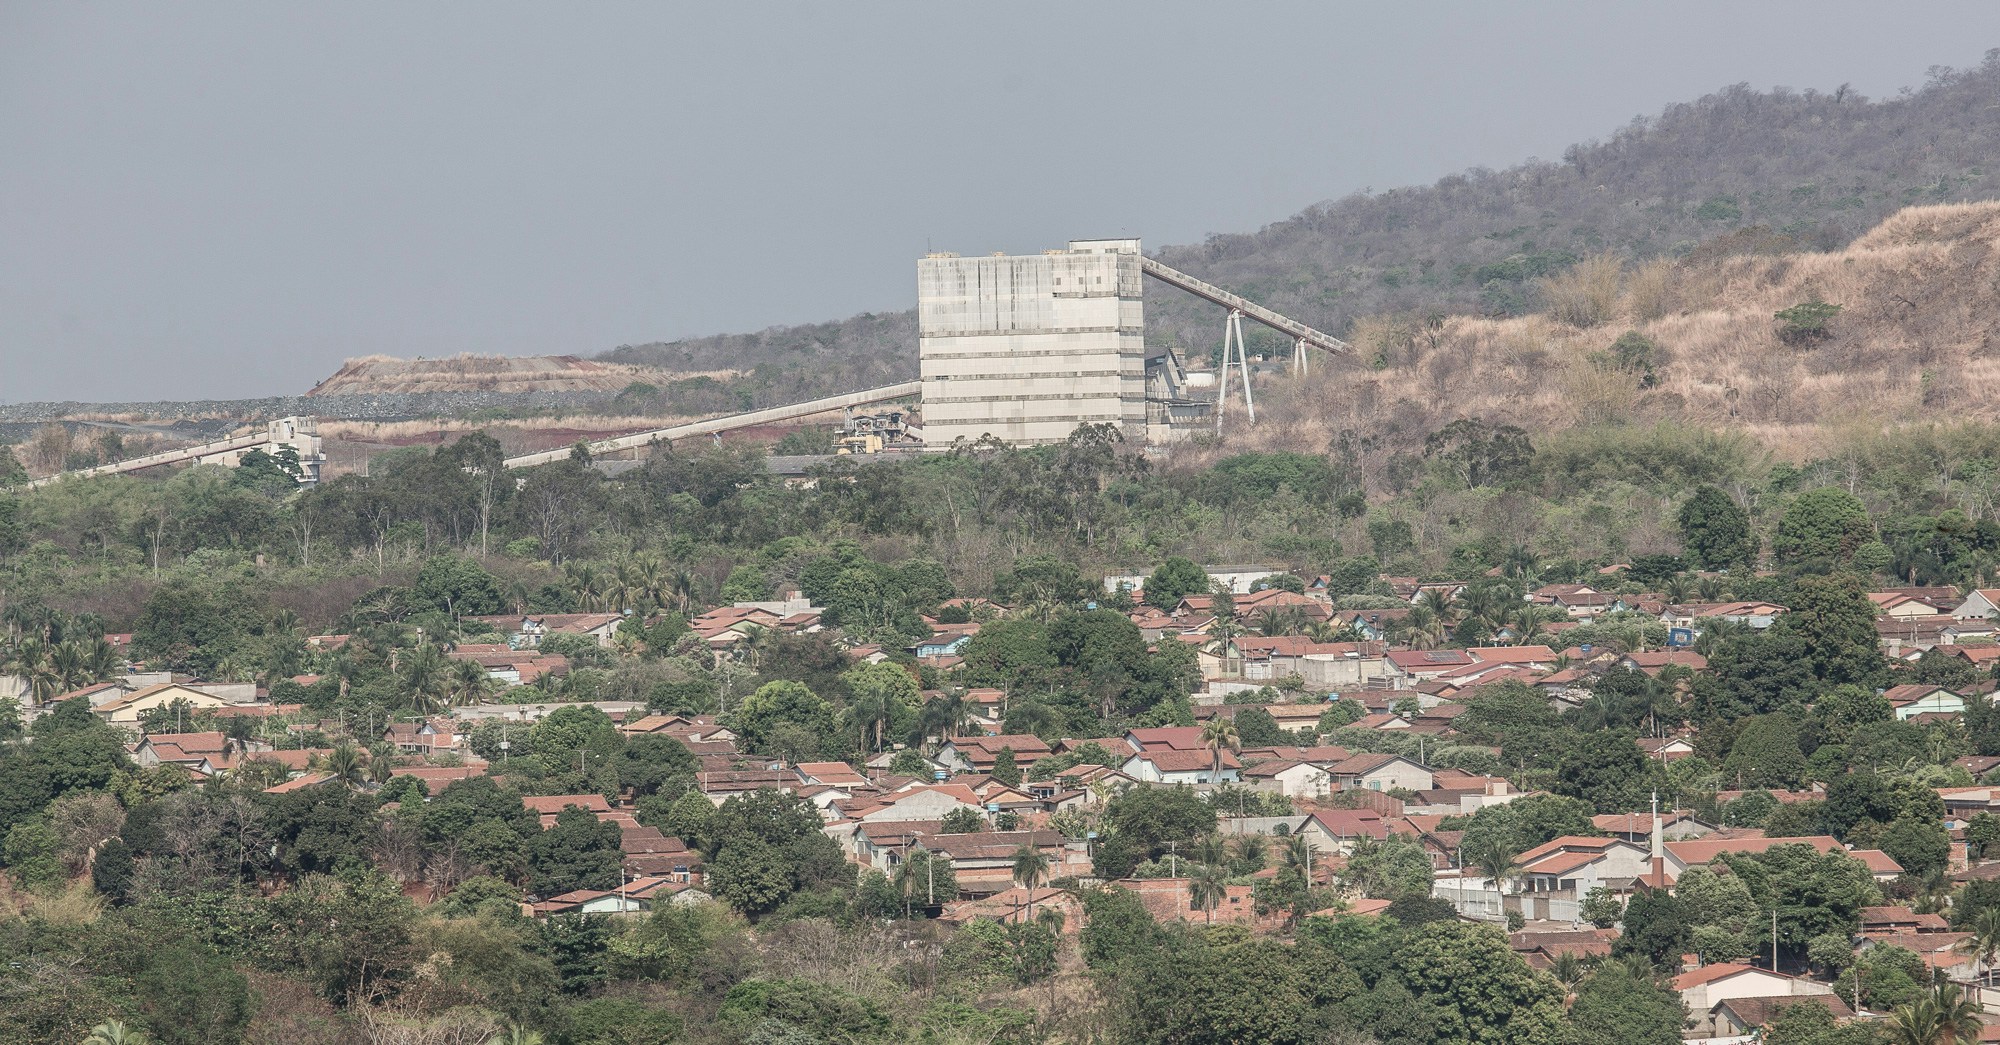 Panorâmica de parte da cidade de Minaçú, com a planta da mineradora Sama ao fundo.